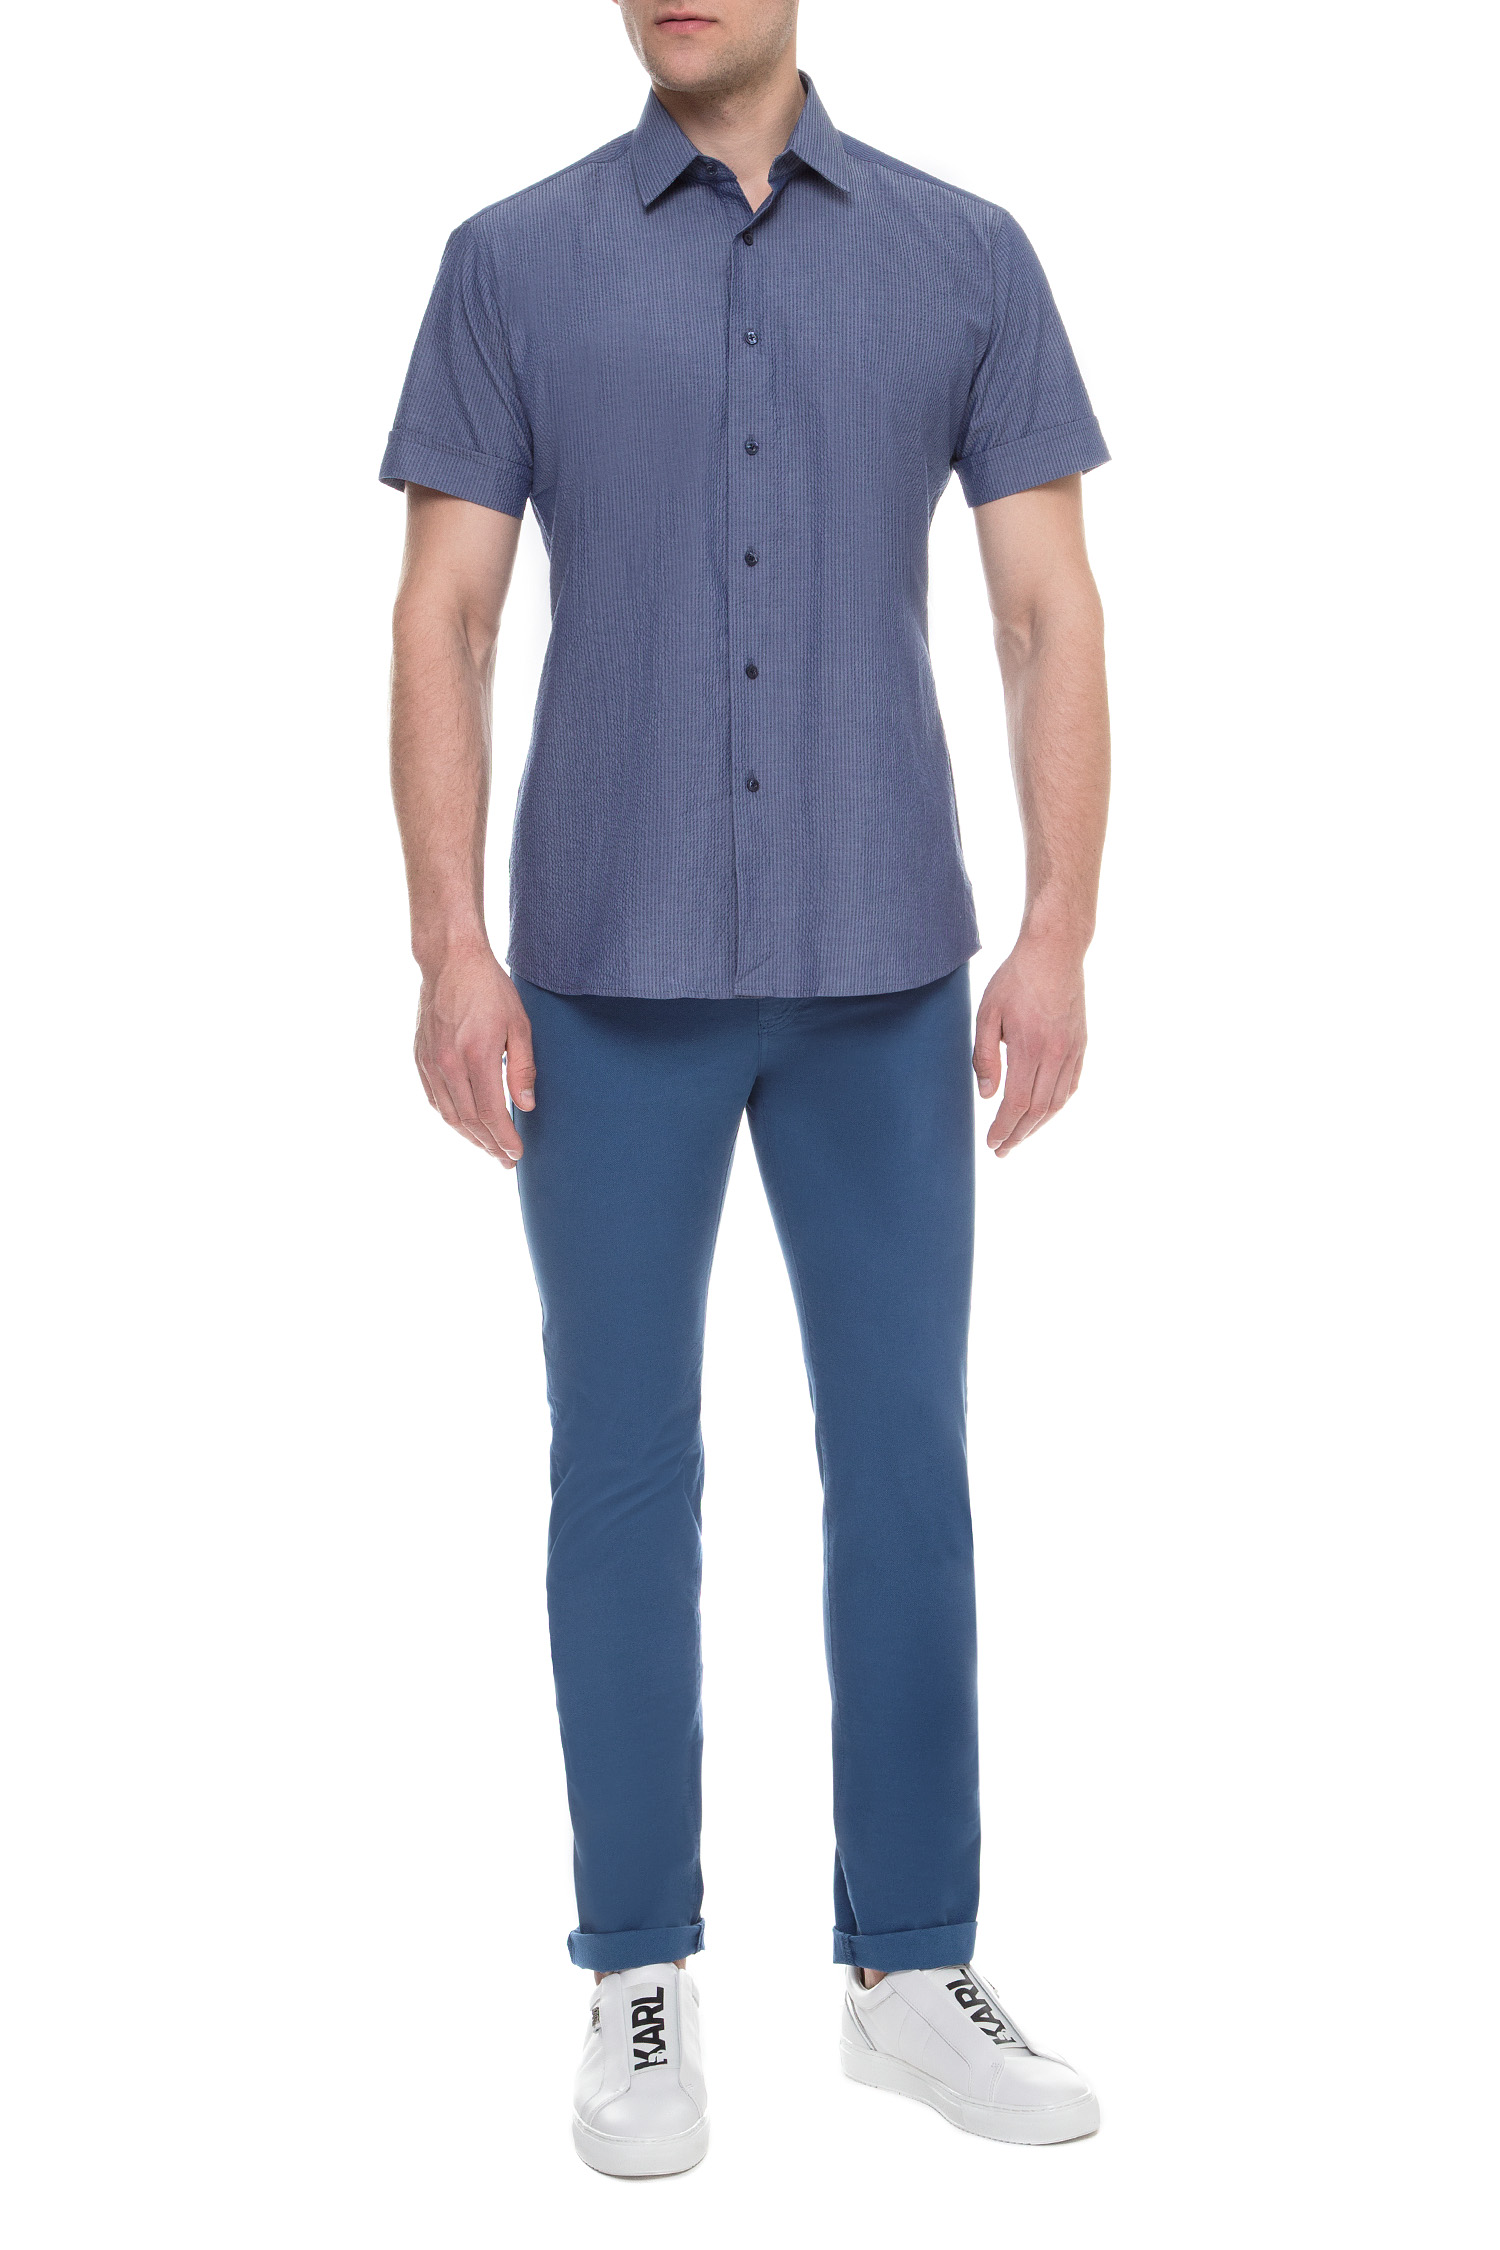 Мужская синяя рубашка Karl Lagerfeld 591622.605500;670